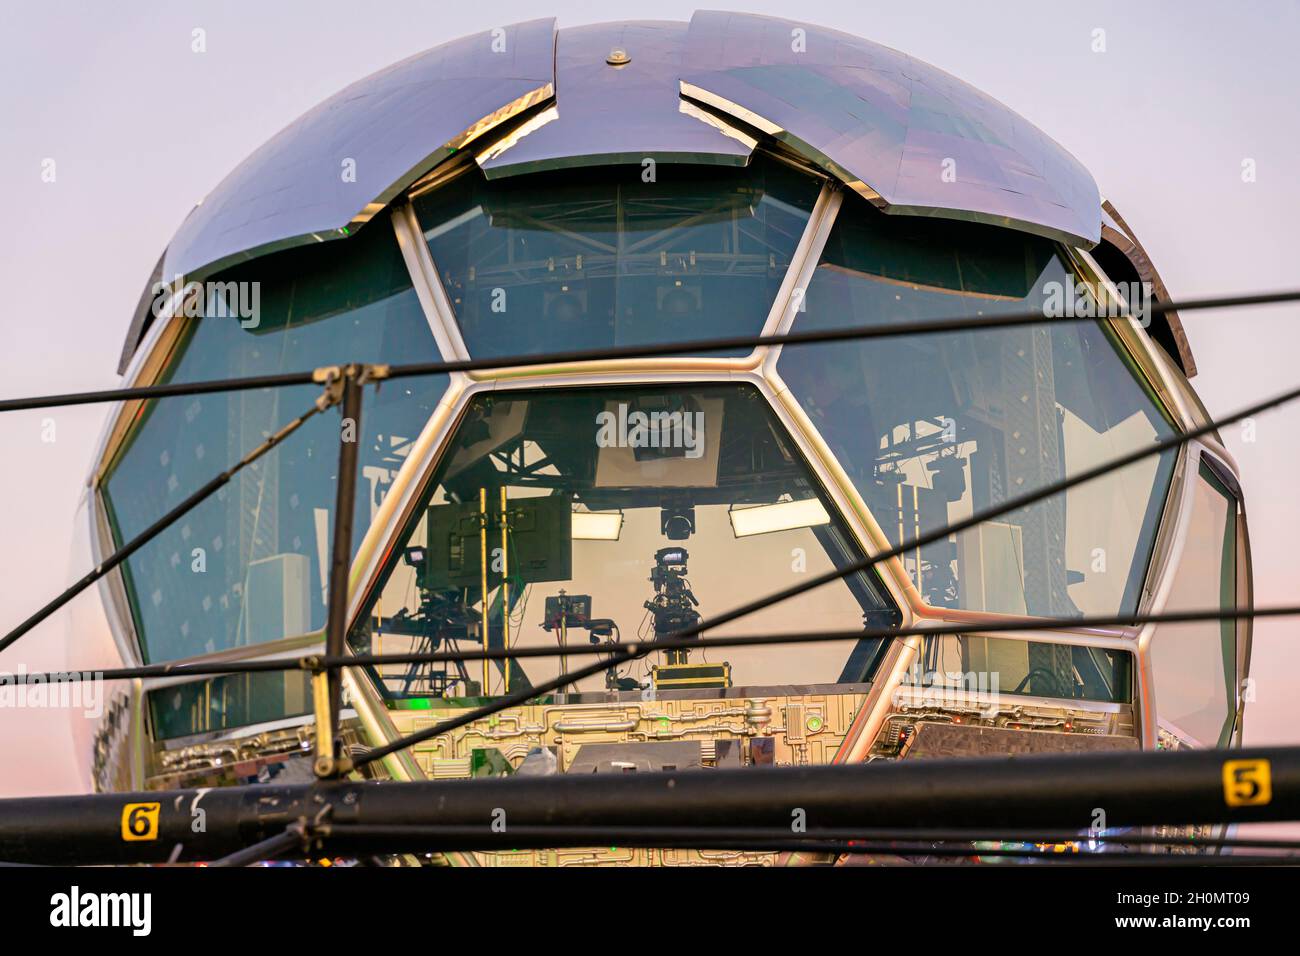 EURO 2020 Match TV-Kanal Studio Glas Konstruktion wie ein Fußball in der Nähe Gazprom Arena, ausgestrahlt UEFA-Turnier, St. Petersburg Russland Stockfoto